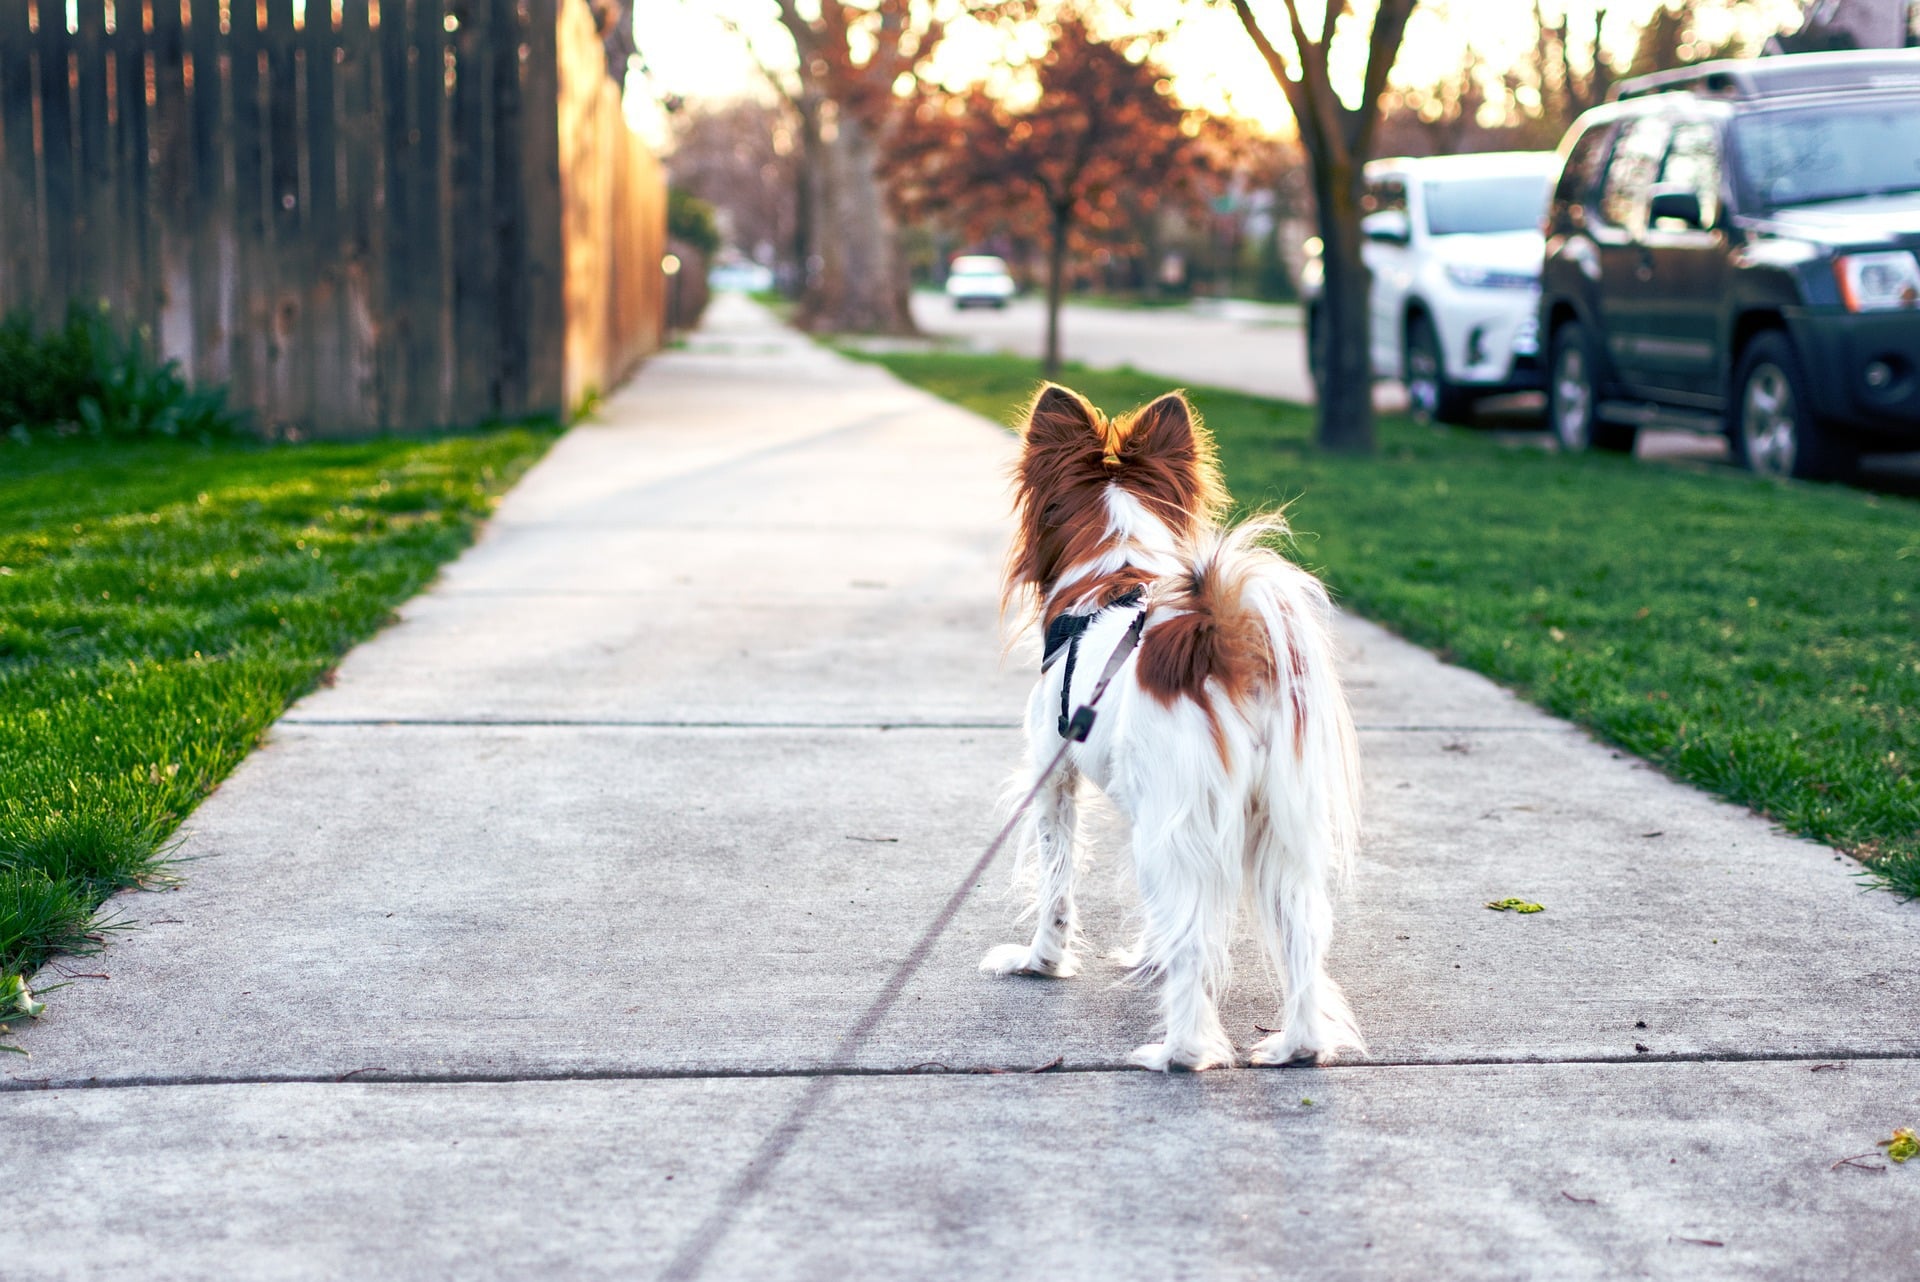 Dog being walked on a sidewalk.